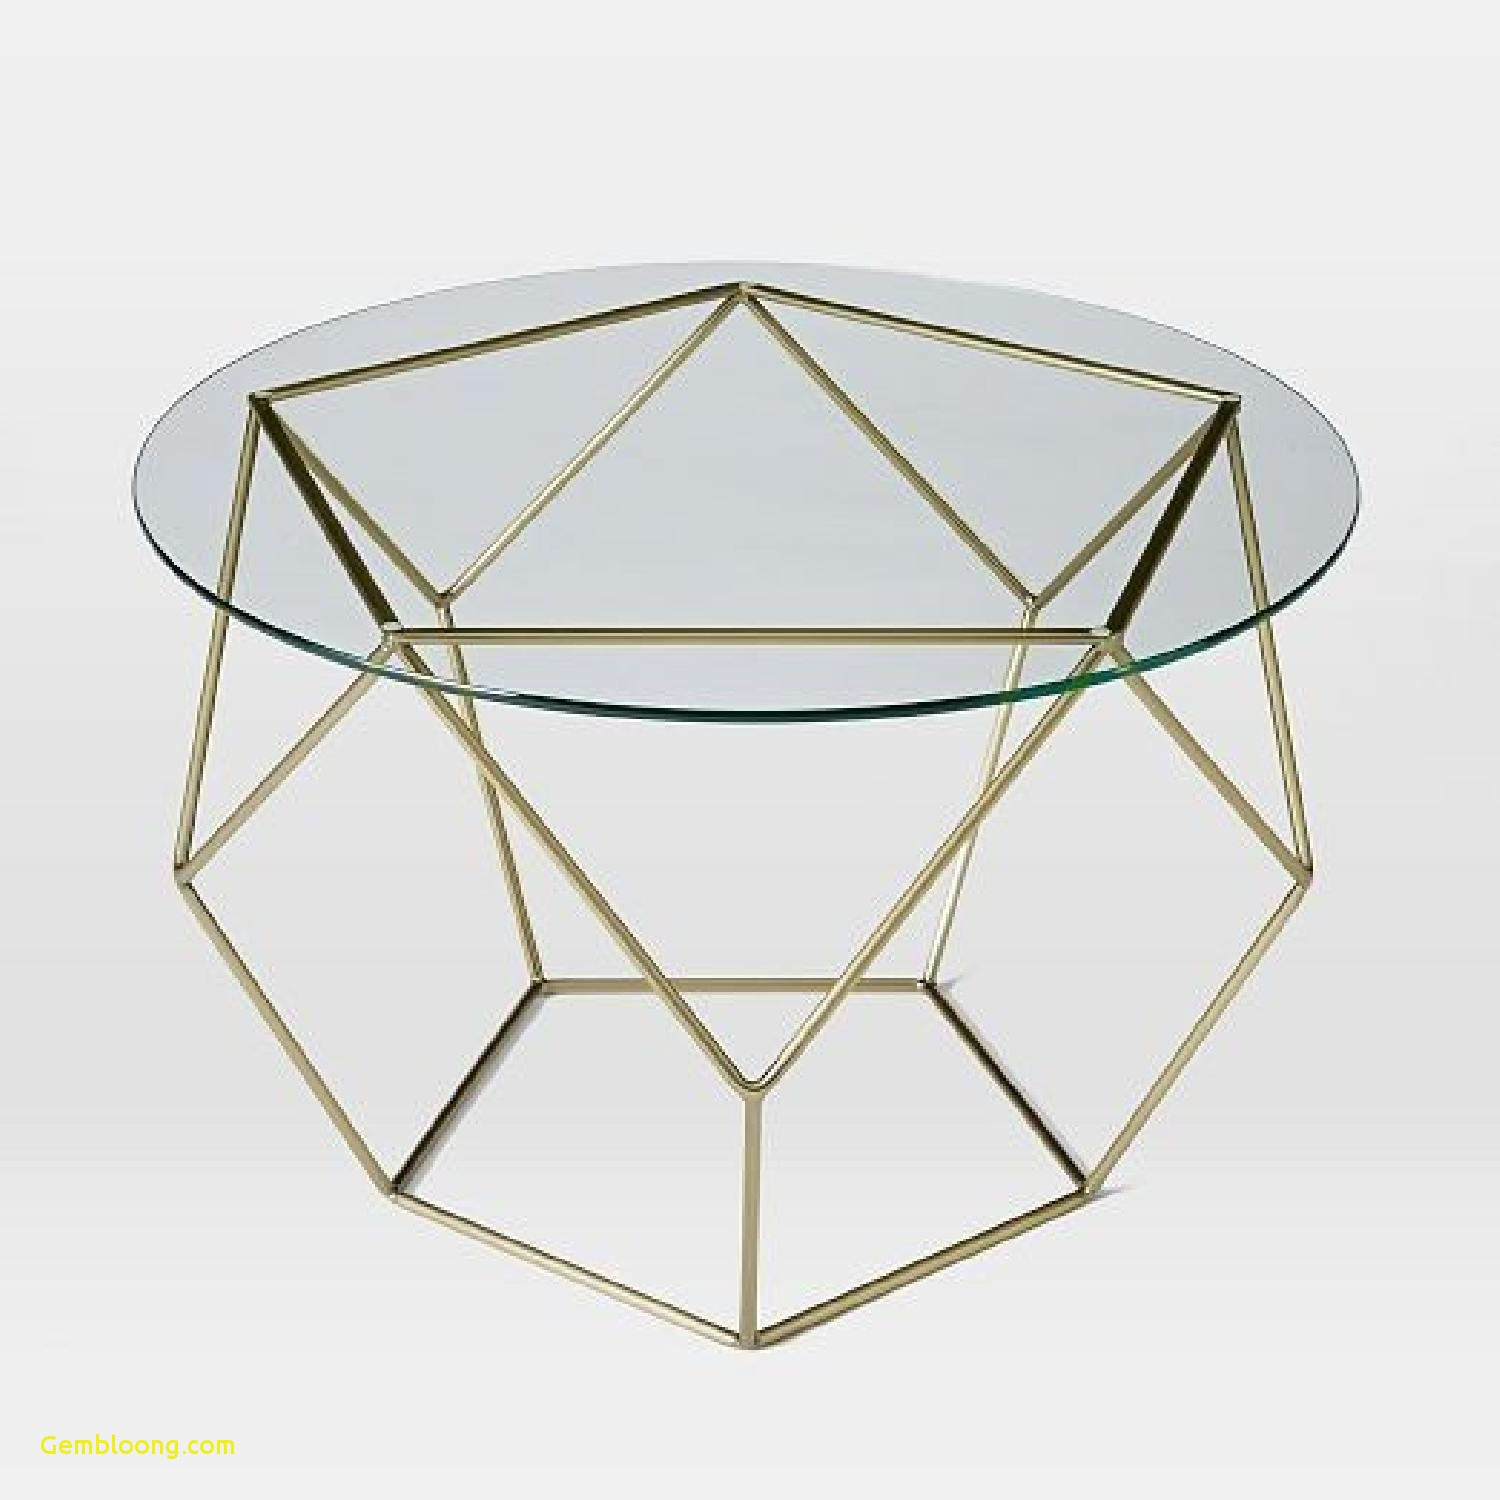 Origami Coffee Table West Elm Elegant West Elm Origami Coffee Table Coffee Table Design Ideas